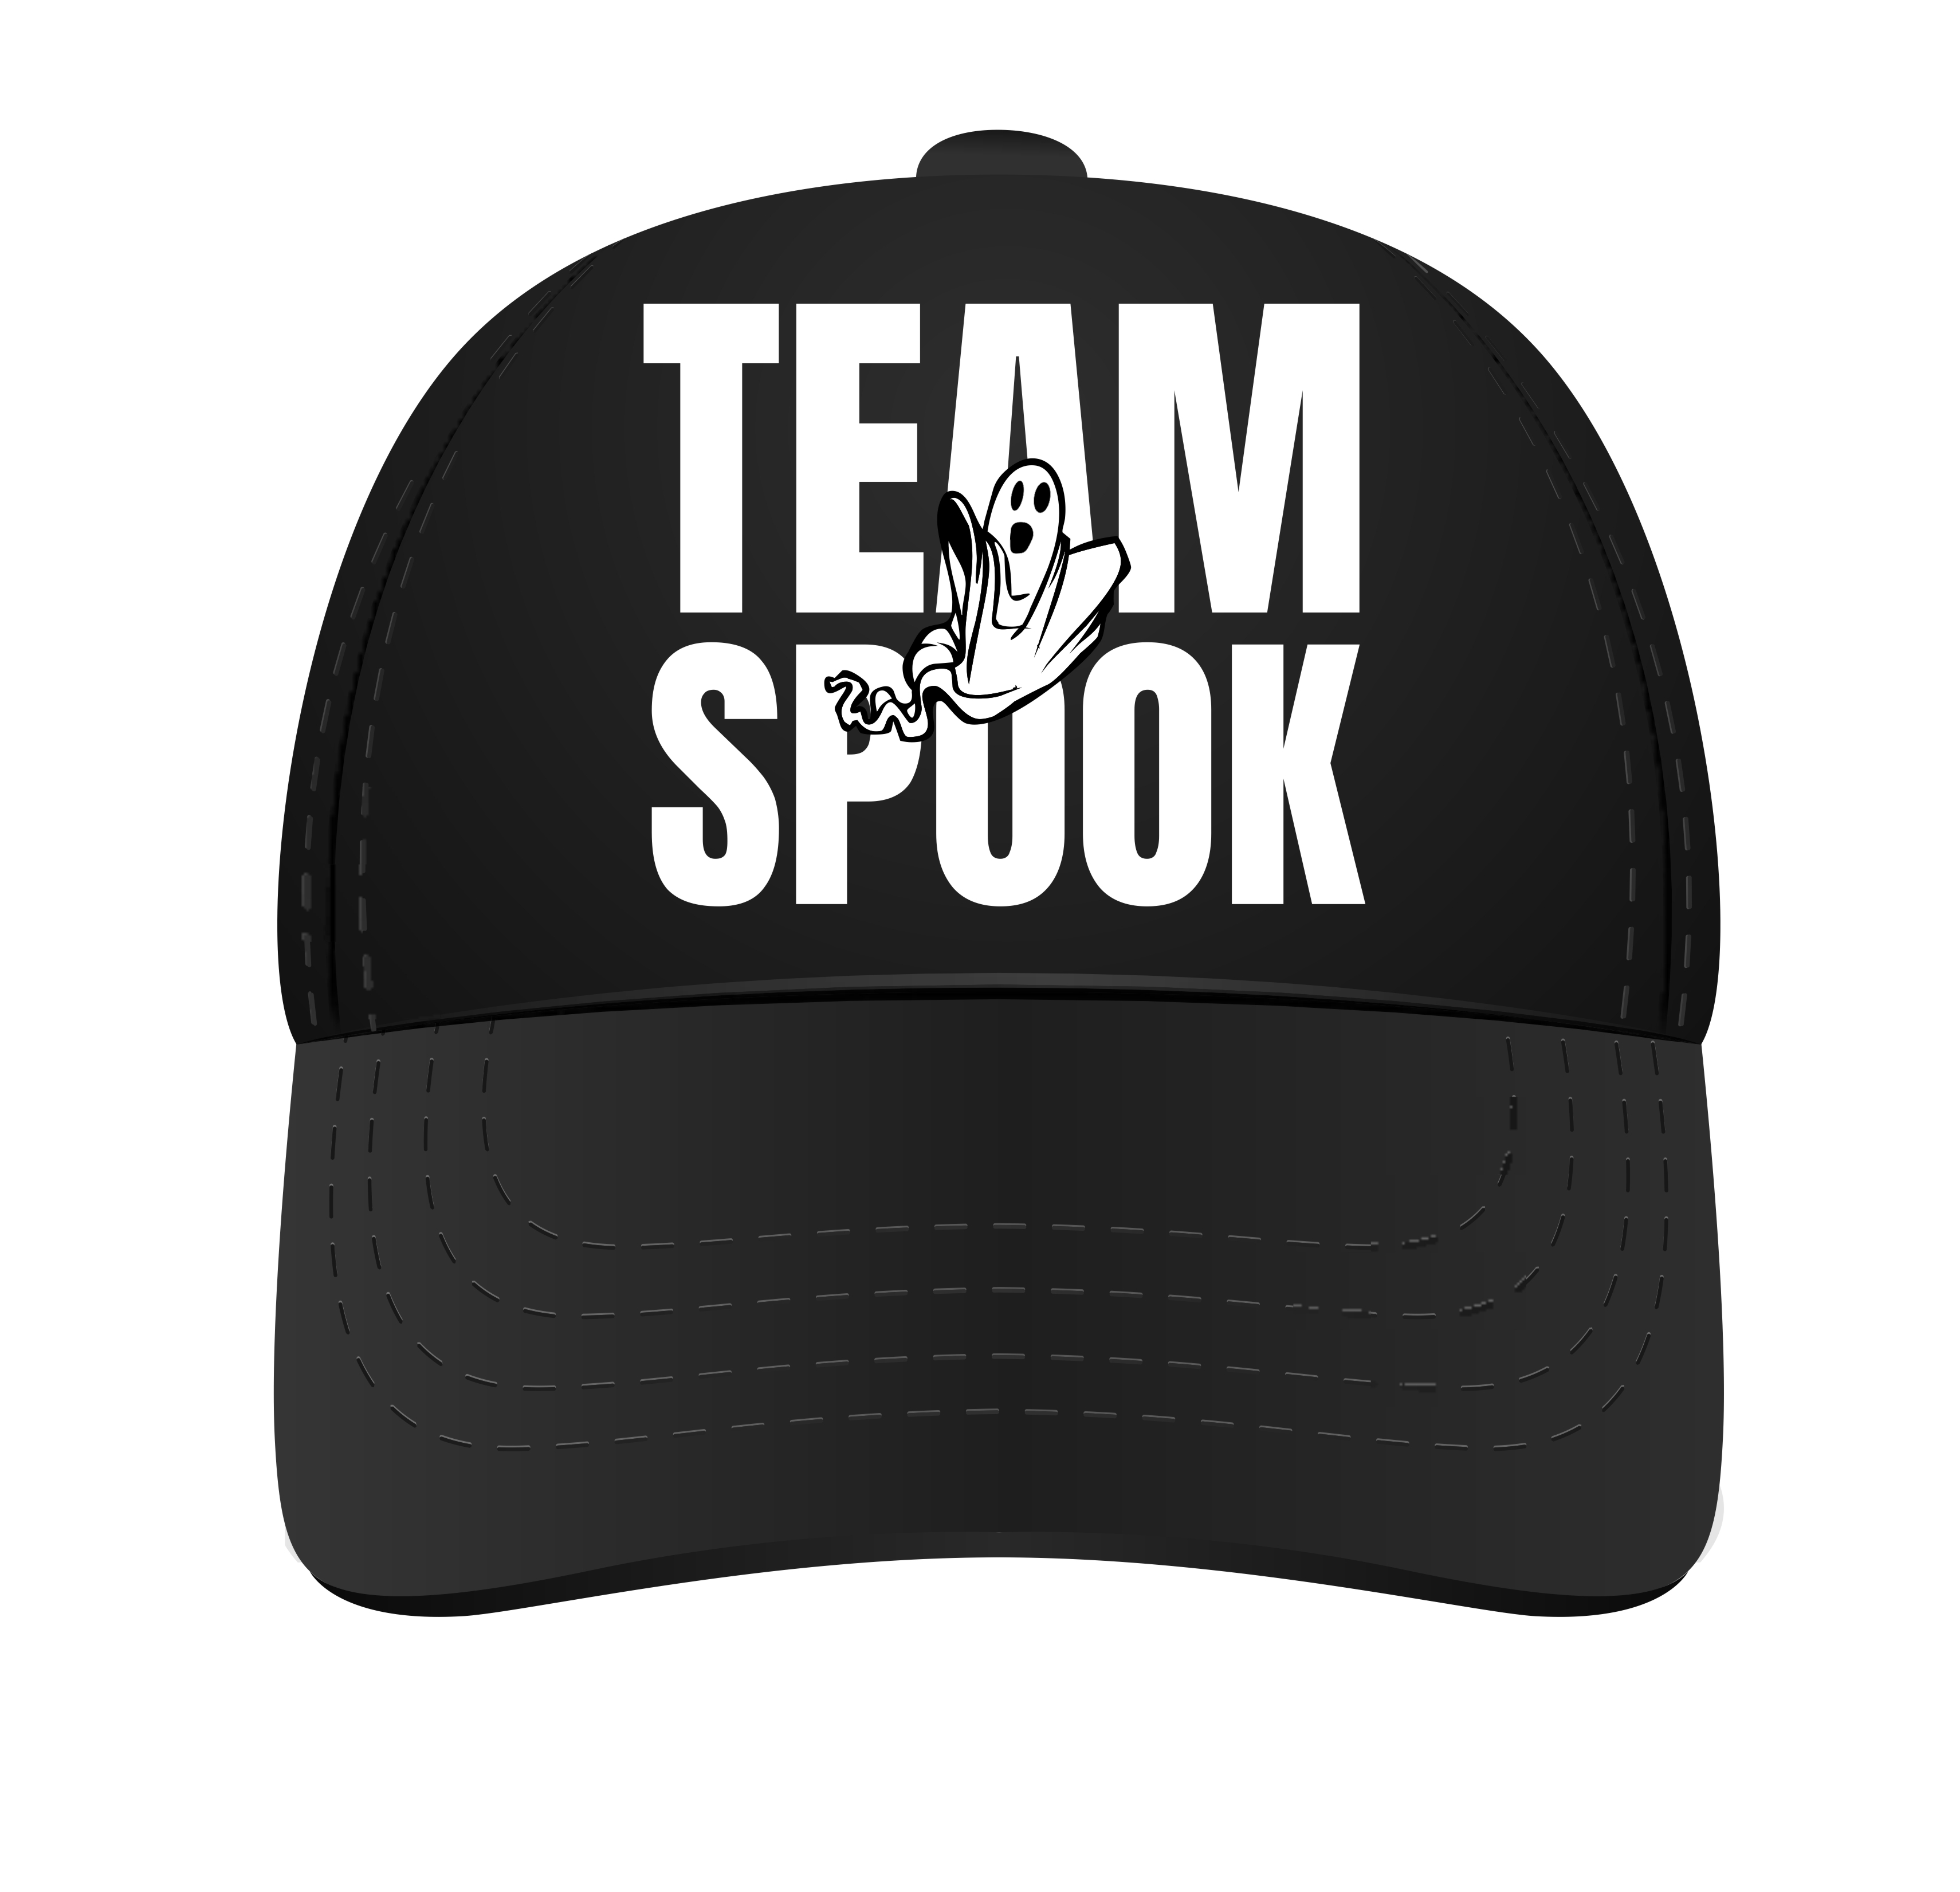 Pet voor team spook! Petje voor Halloween